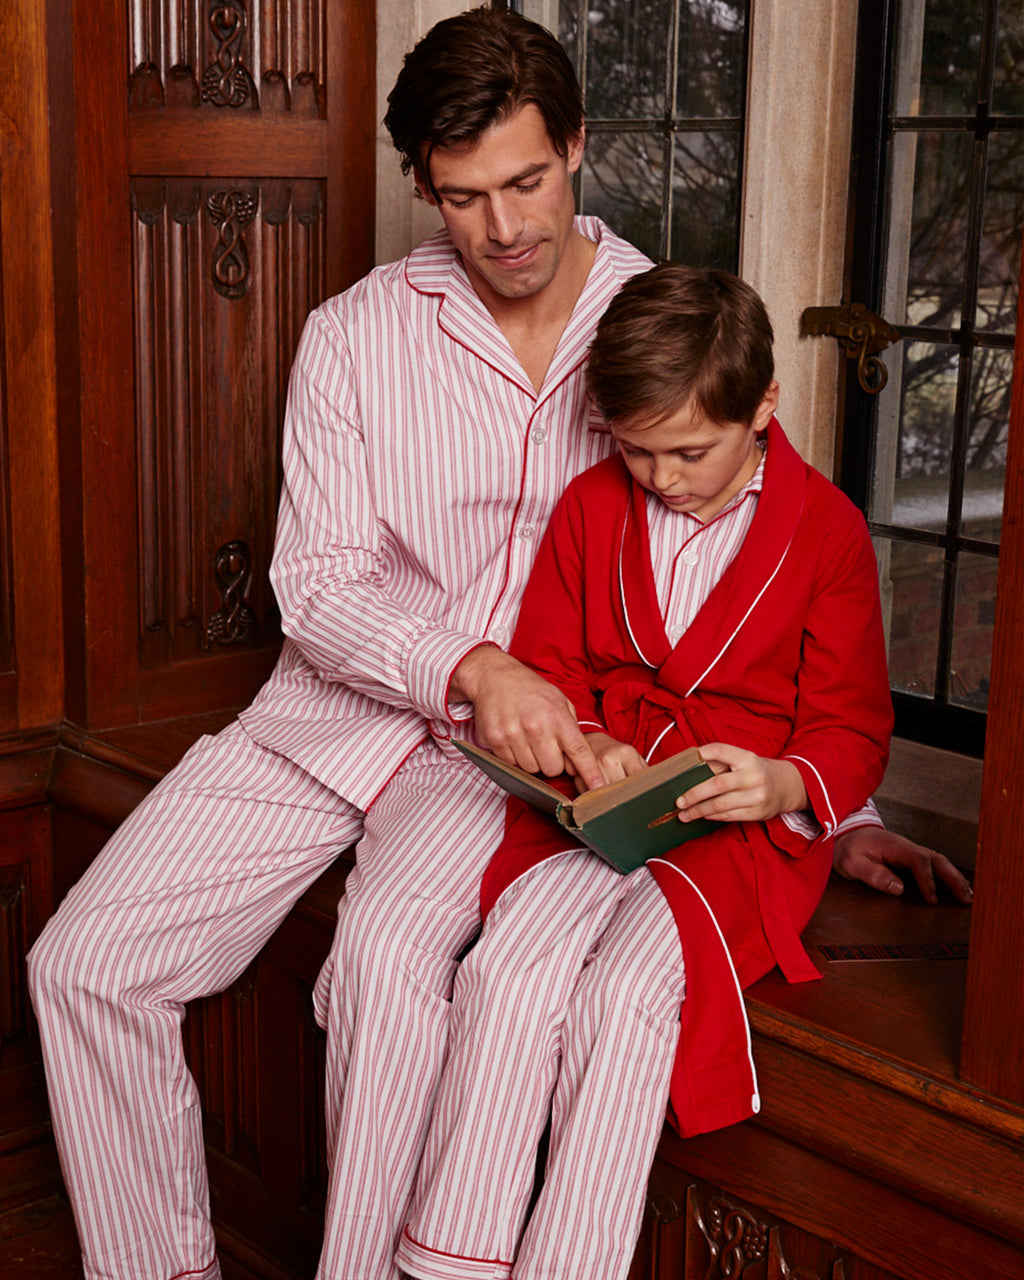 Petite Plume Men's Luxe Silk Pajama